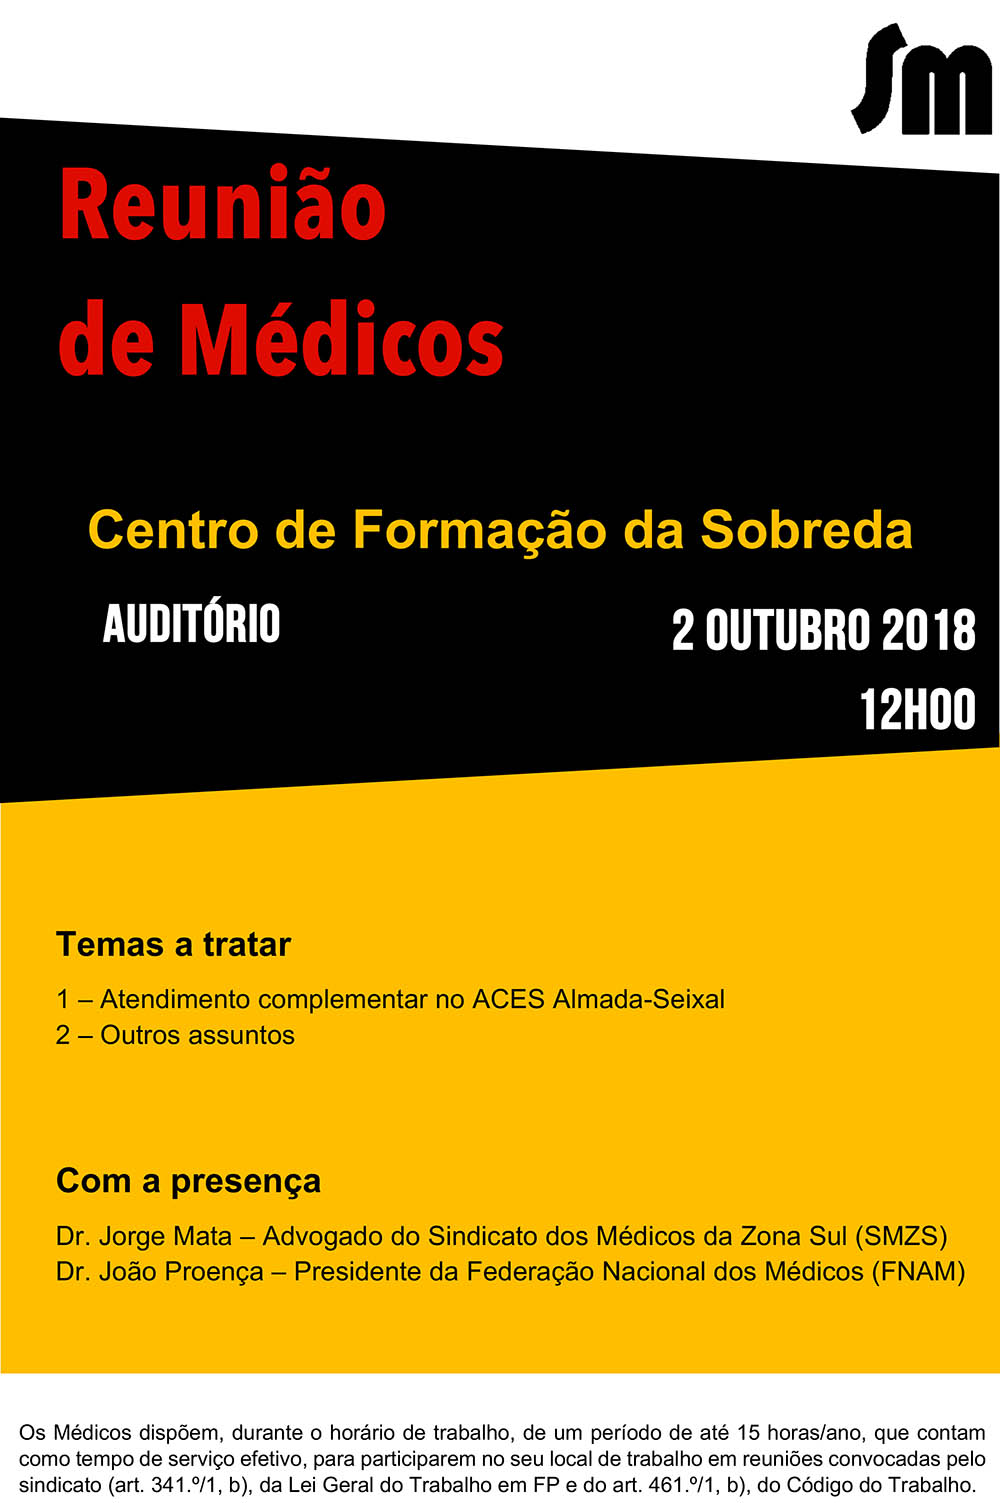 Reunião de Médicos Almada-Seixal